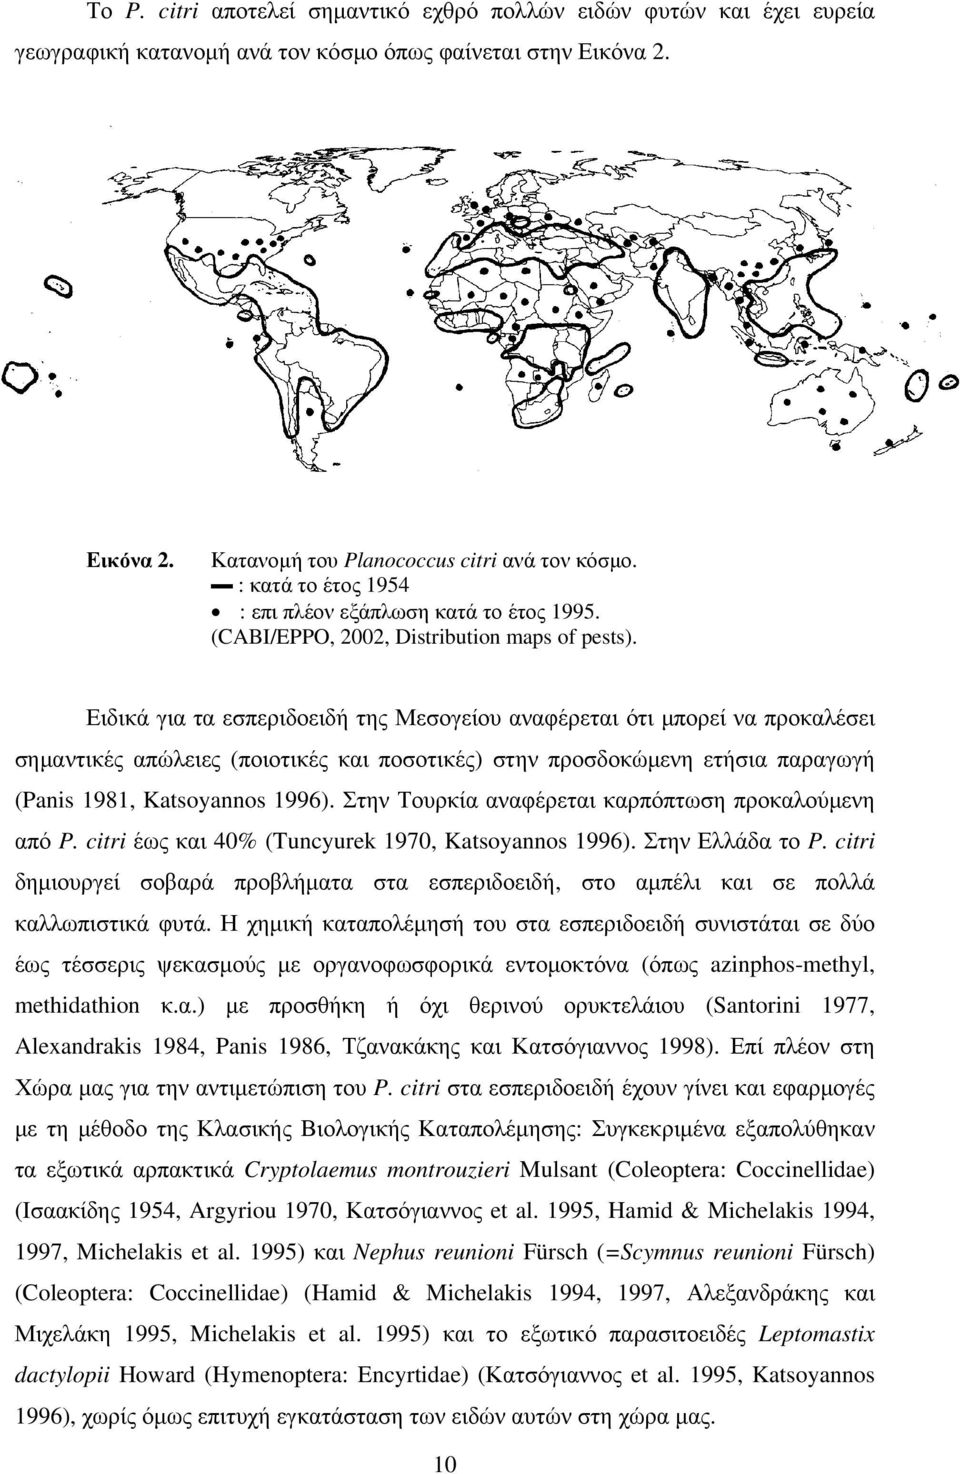 Ειδικά για τα εσπεριδοειδή της Μεσογείου αναφέρεται ότι μπορεί να προκαλέσει σημαντικές απώλειες (ποιοτικές και ποσοτικές) στην προσδοκώμενη ετήσια παραγωγή (Panis 98, Katsoyannos 996).